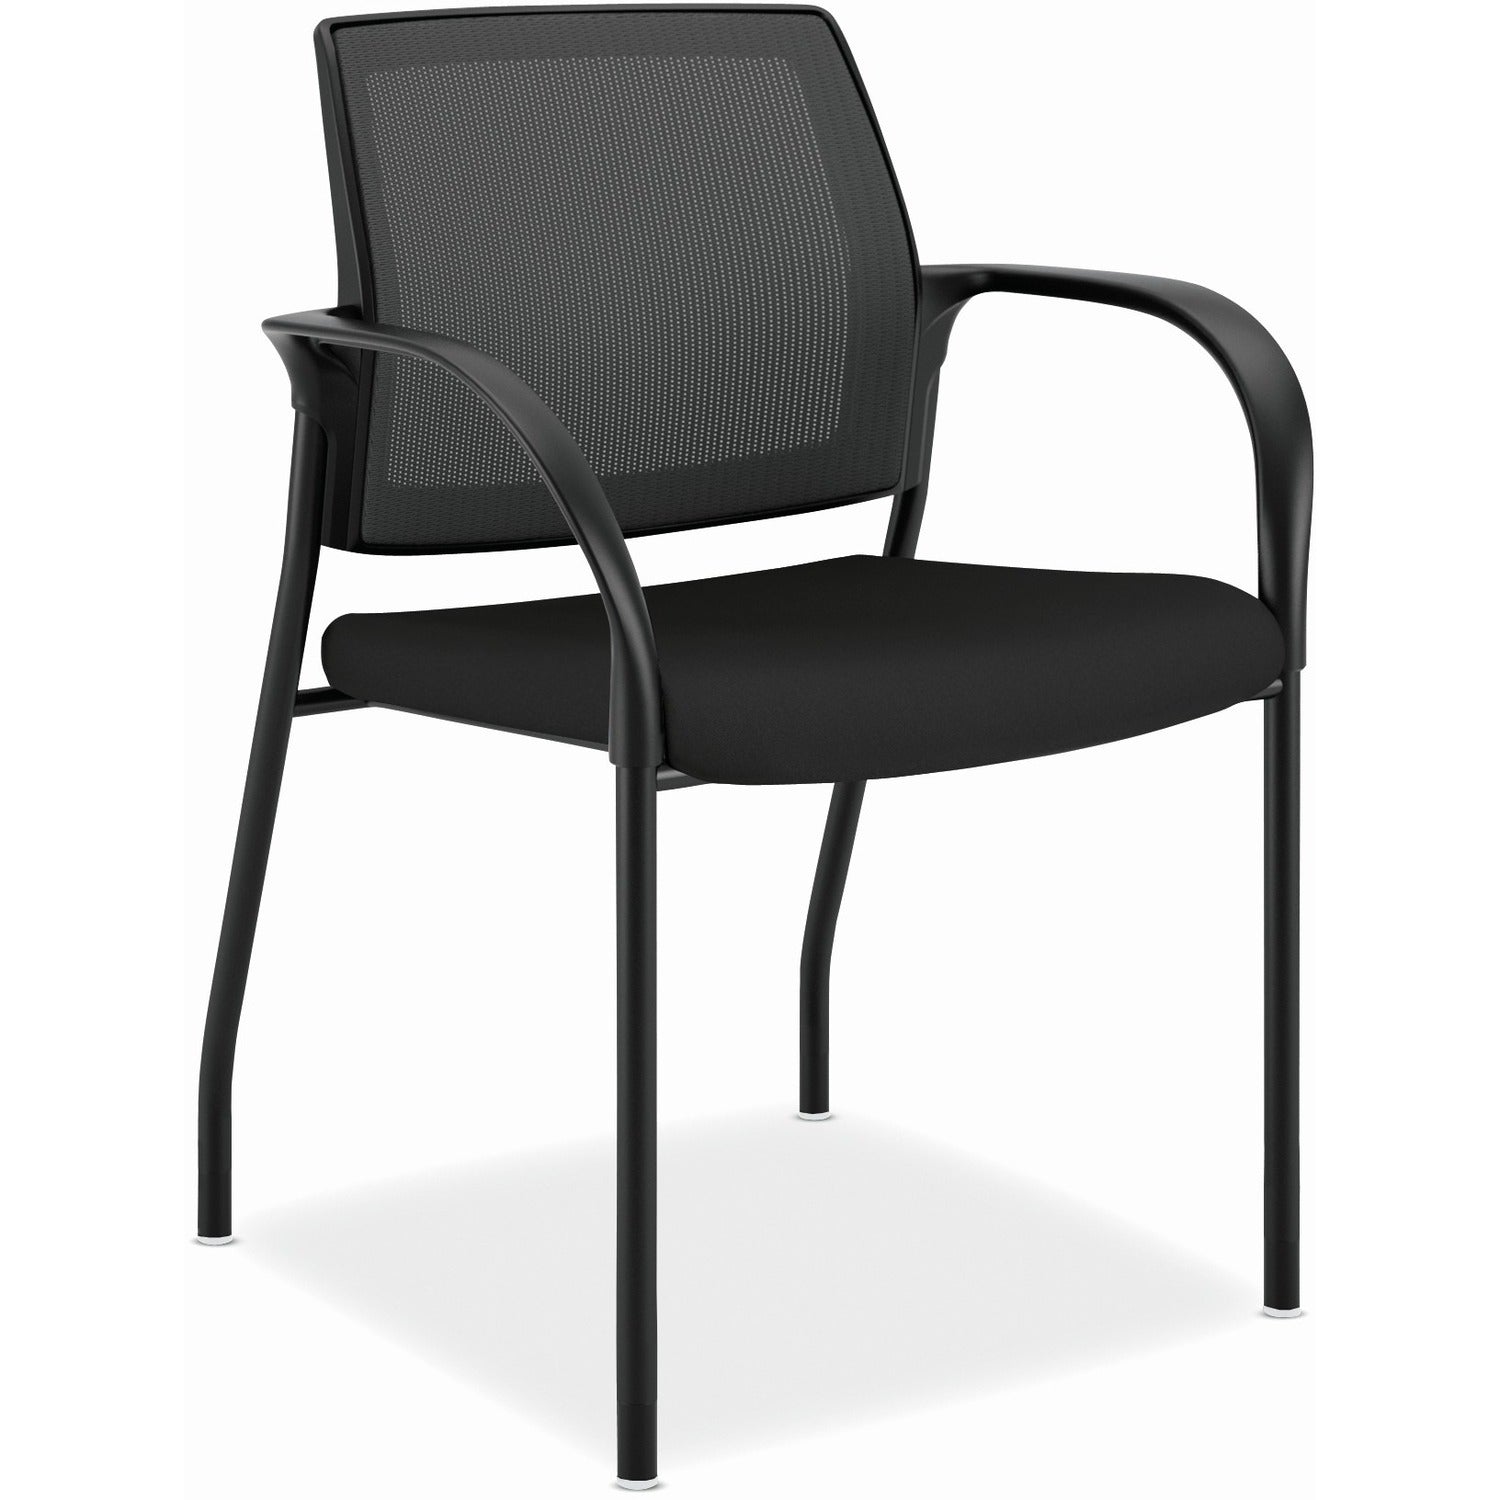 hon-ignition-chair-black-fabric-seat-black-mesh-back-black-steel-frame-black-armrest_honis108imcu10 - 1